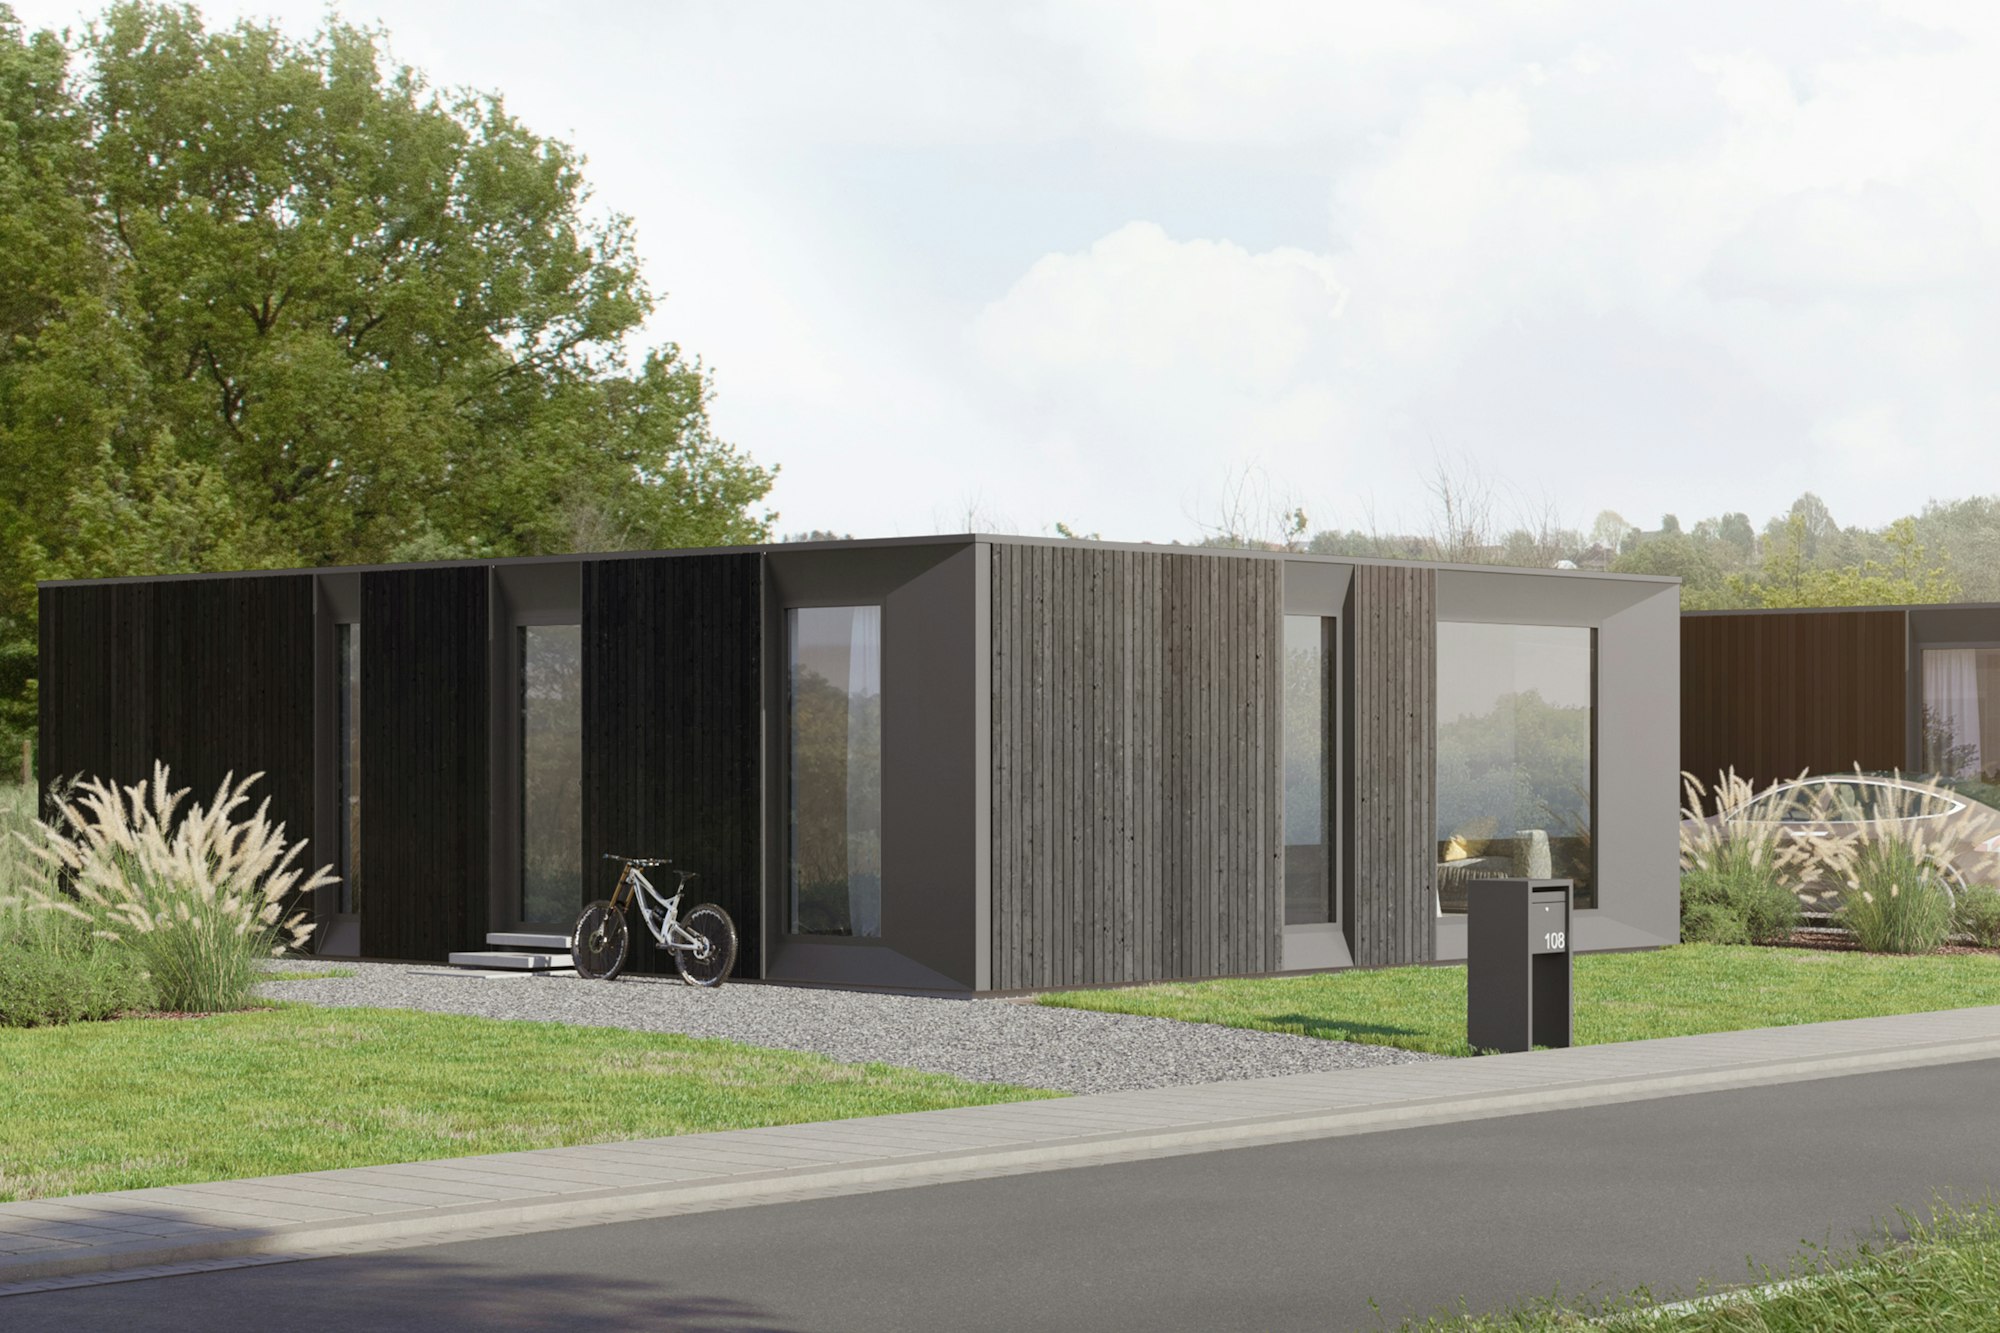 Skilpod #108 — houtskeletbouw bungalow woning met 2 slaapkamers, modern design met zwart hout